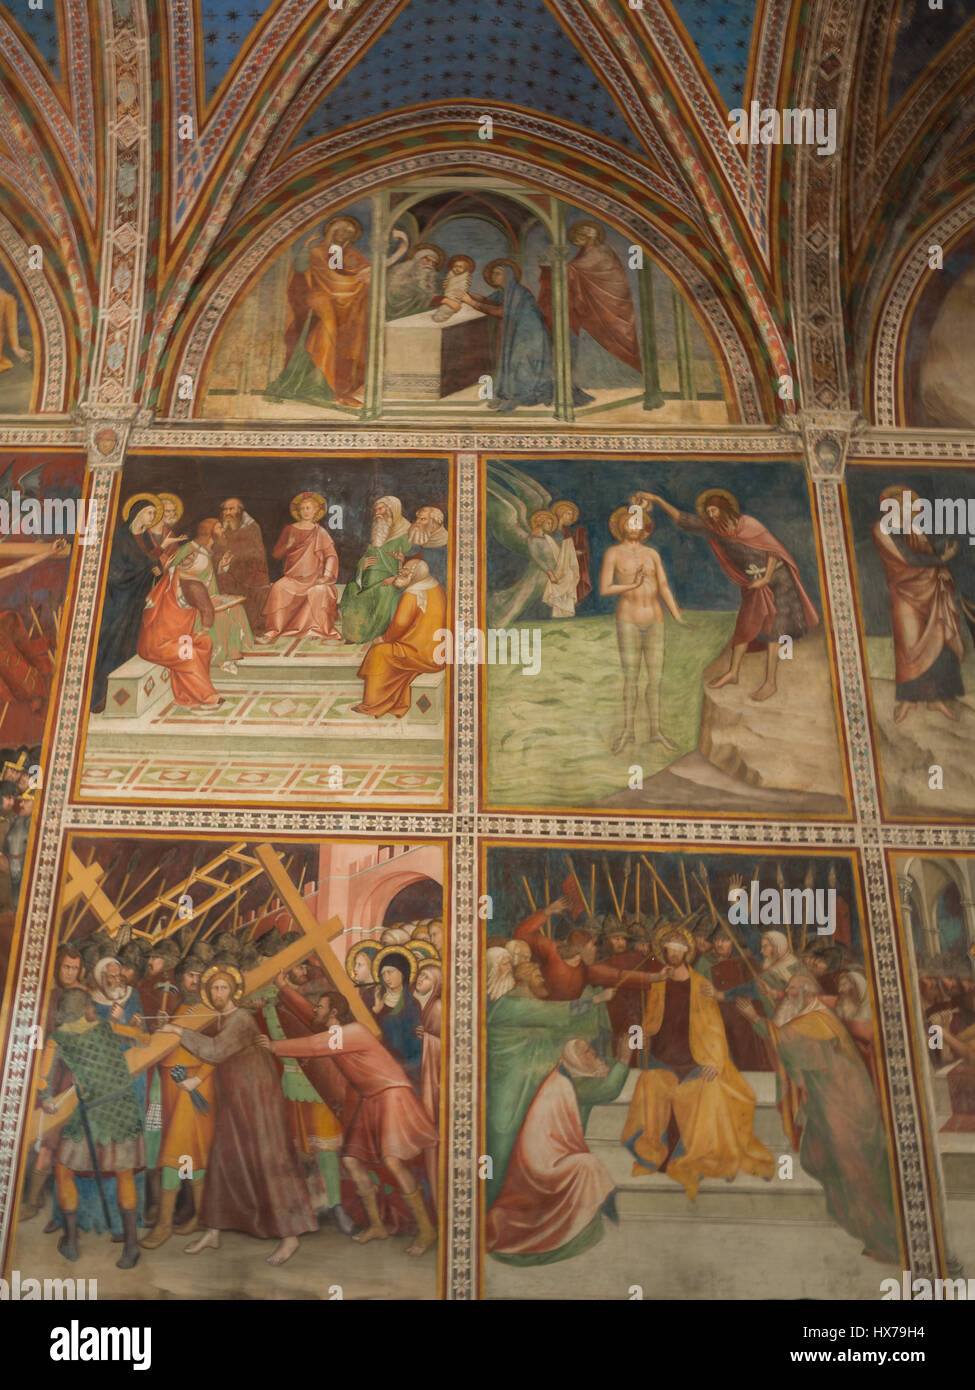 Le Baptême de Jésus, entre autres la vie du Christ, scène des fresques de la Collégiale de San Gimignano Banque D'Images